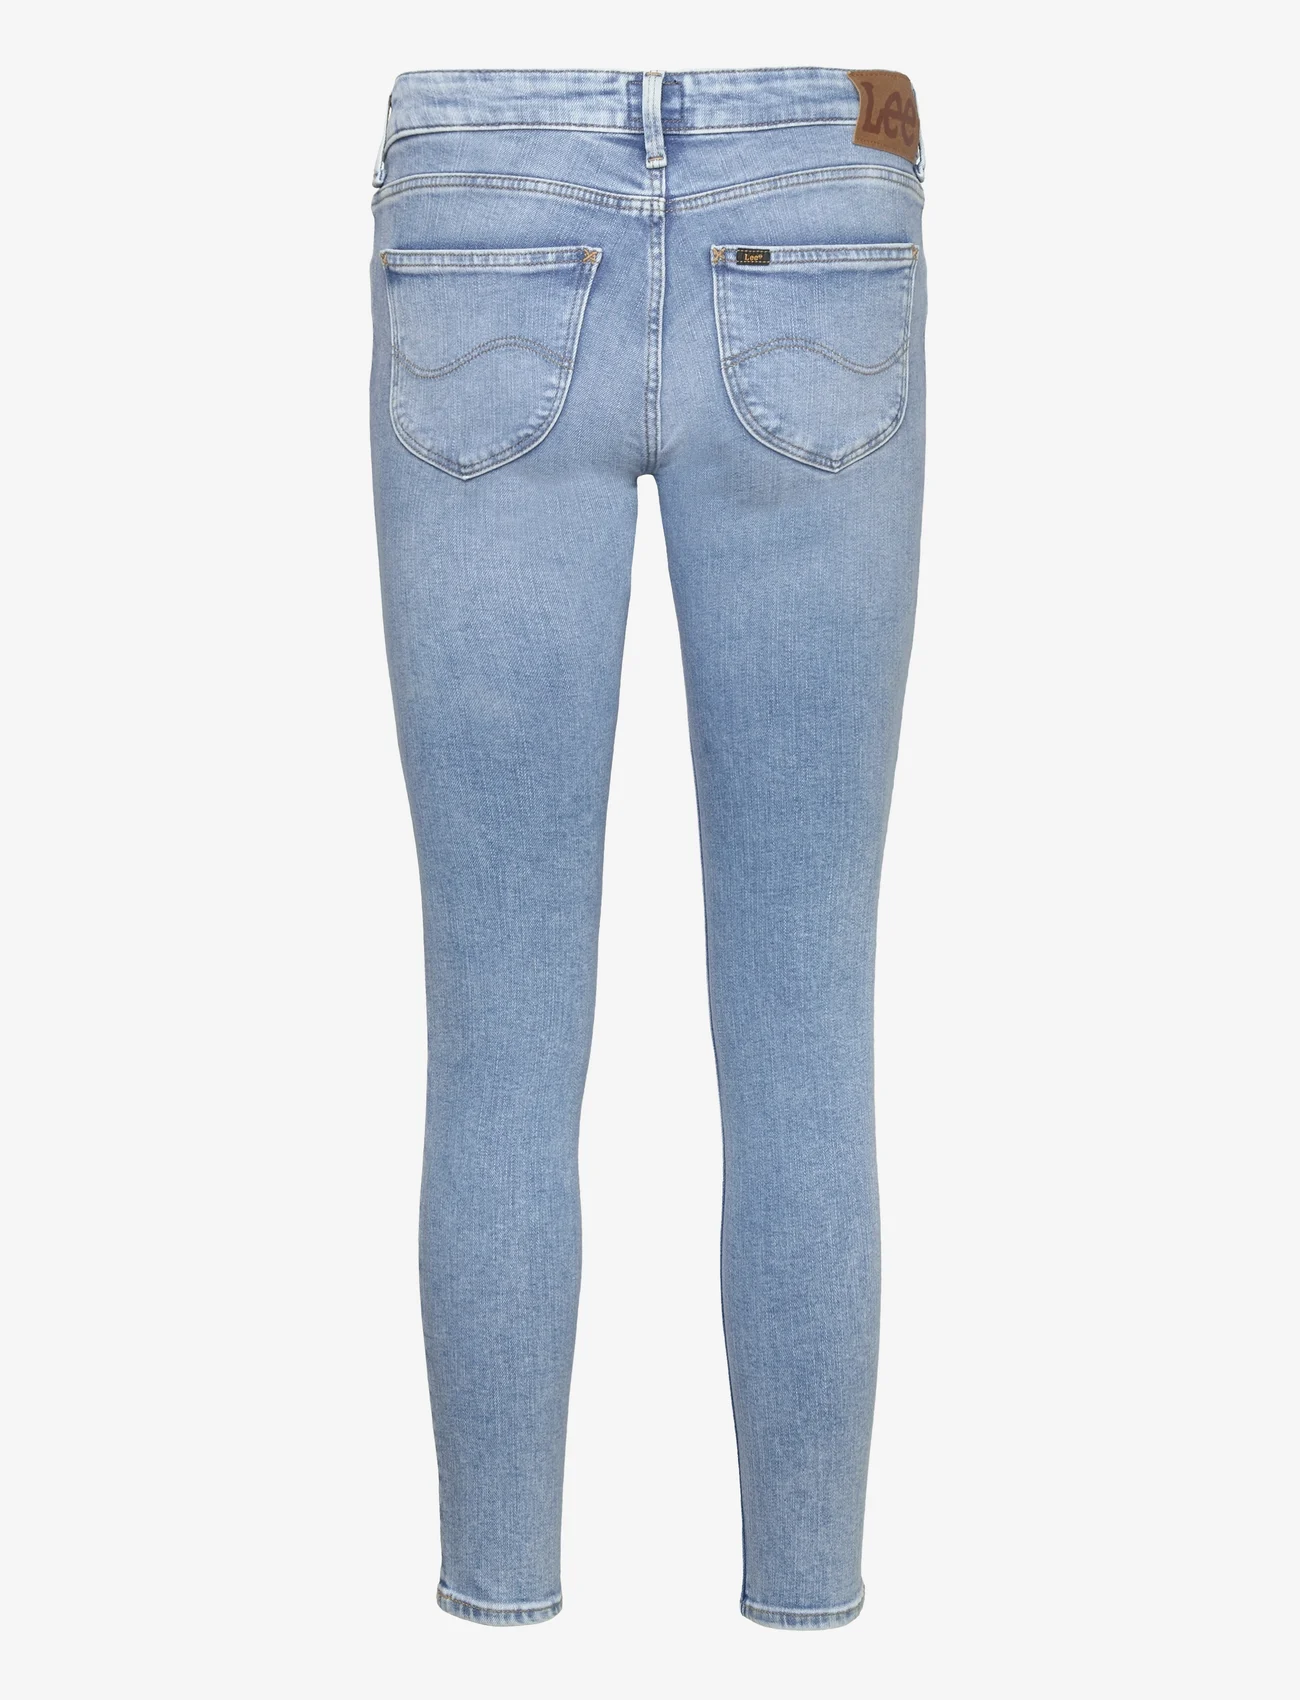 Lee Jeans - SCARLETT - skinny jeans - elevated energy - 1